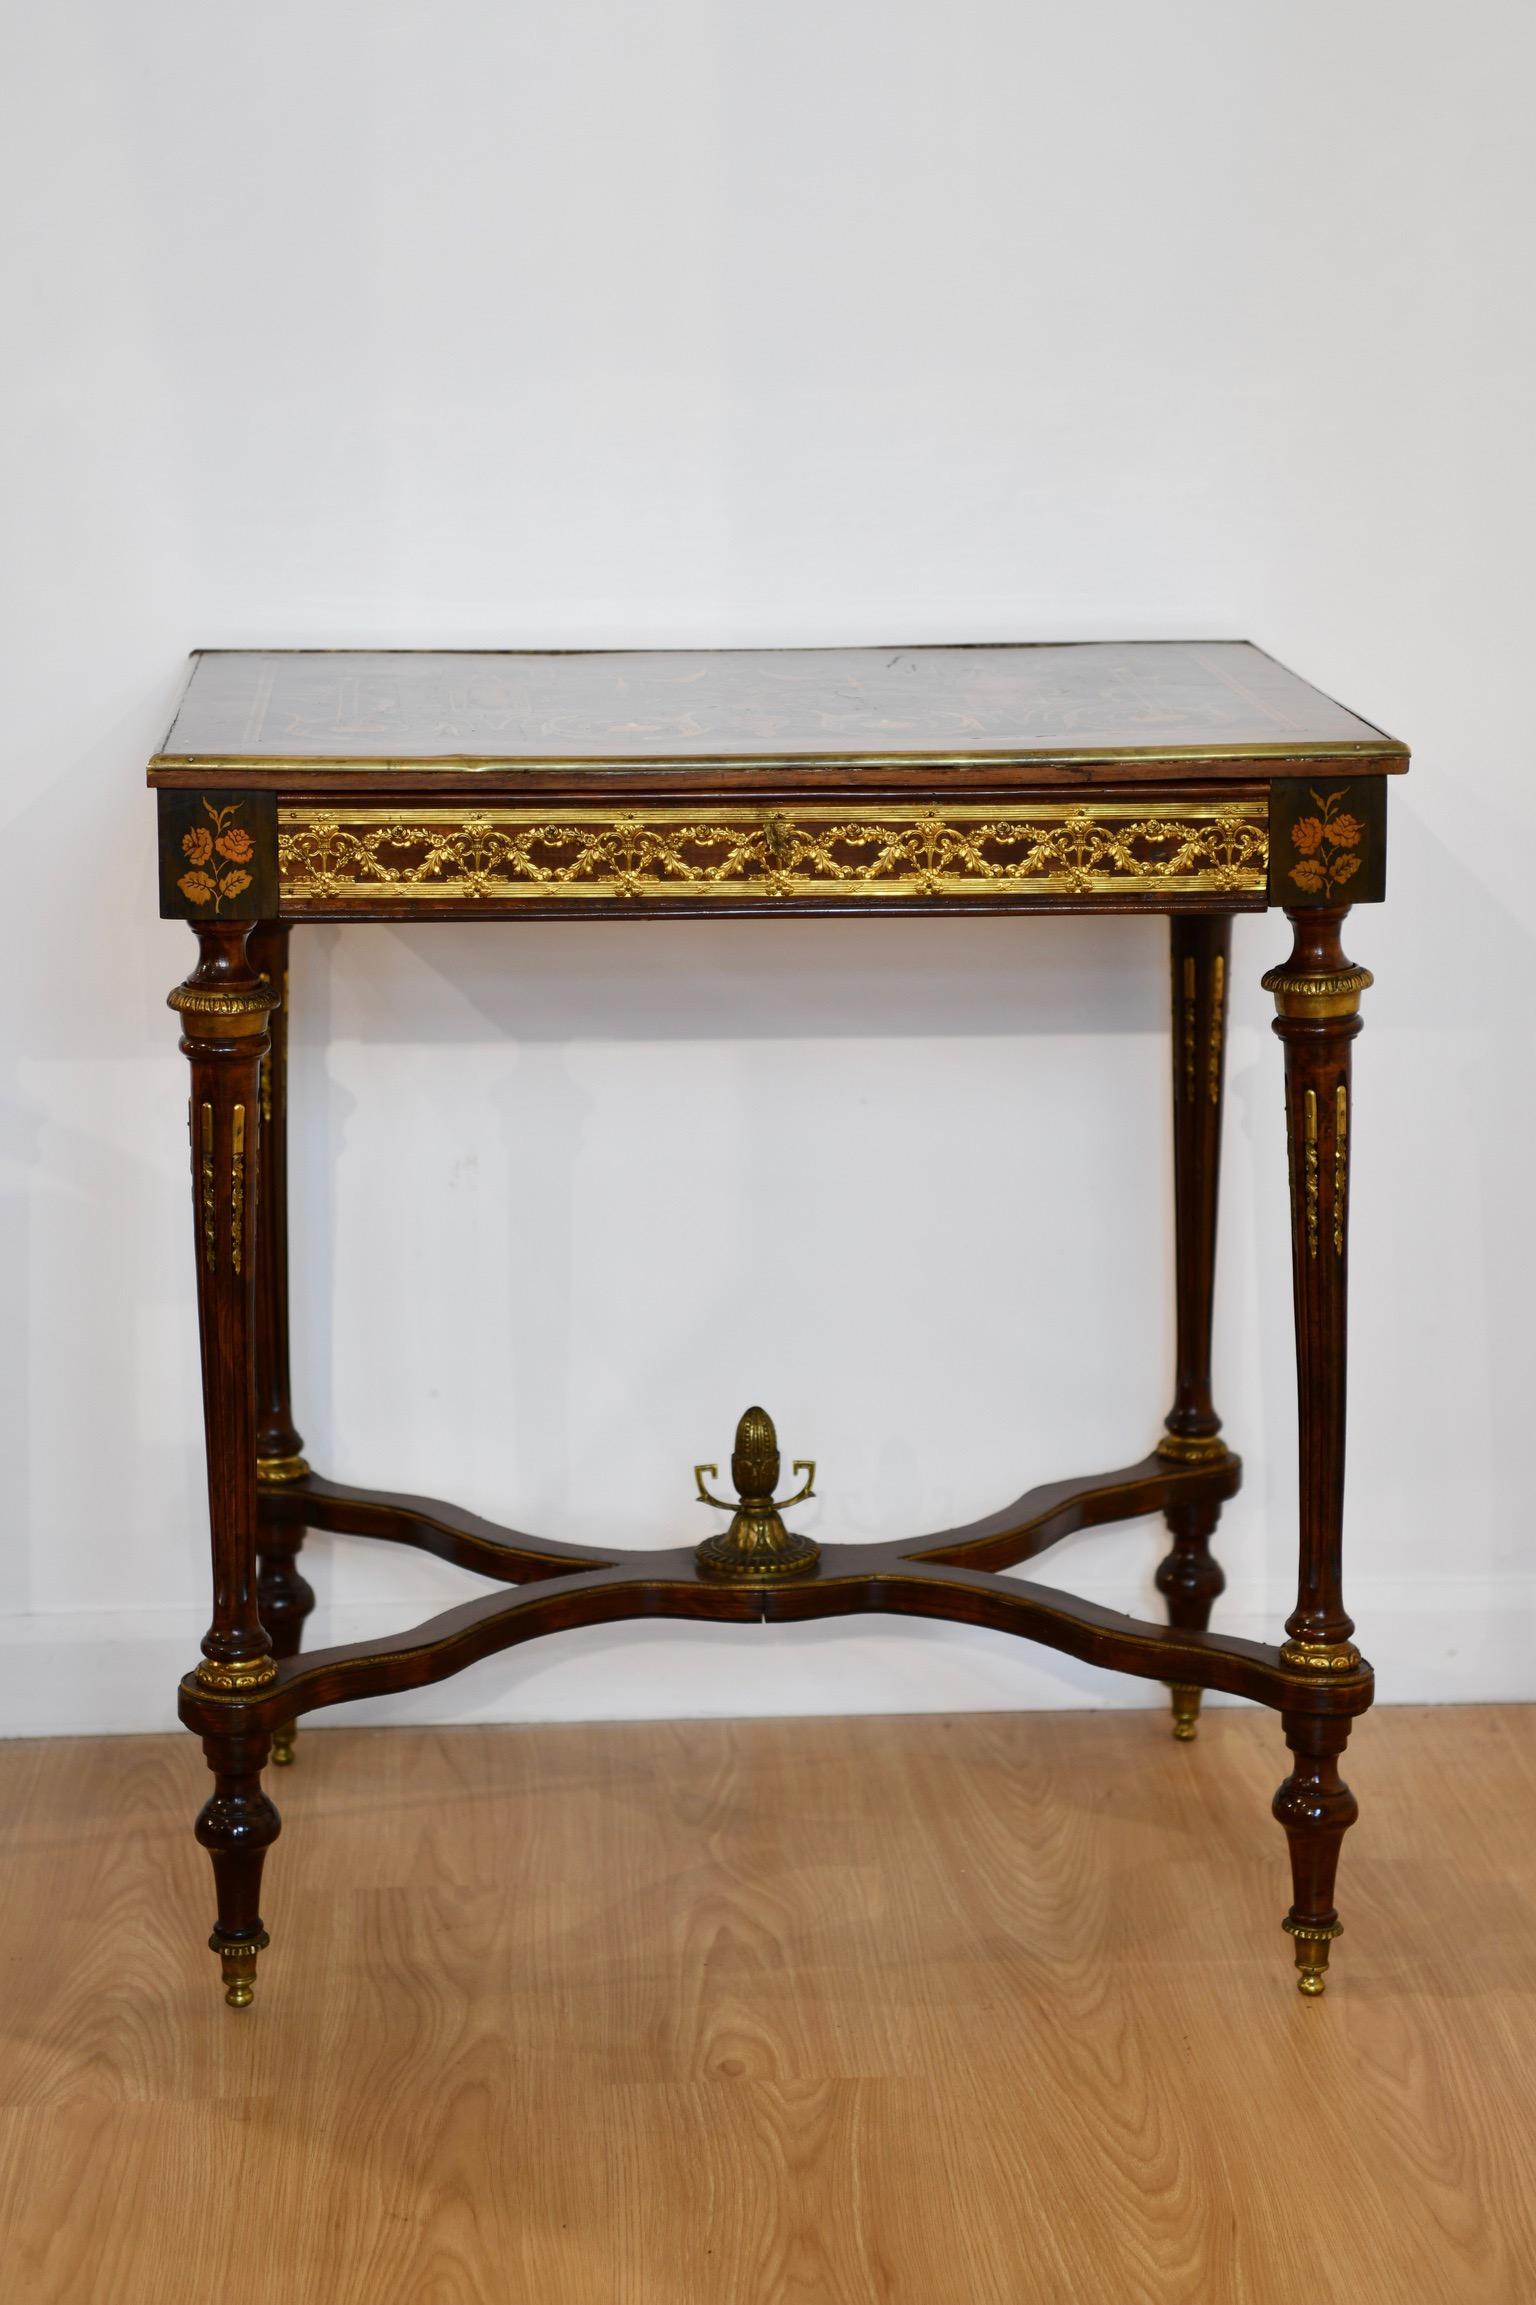 Intarsien-Schreibtisch im Louis XVI-Stil mit klassizistischem Motiv und Perlmutt-Intarsien über vergoldeter Bronze-Schürze mit einer Schublade. Tabelle auf konischen geriffelten Beinen mit Eichel Finial montiert Bahre erhöht. Abmessungen: 29 